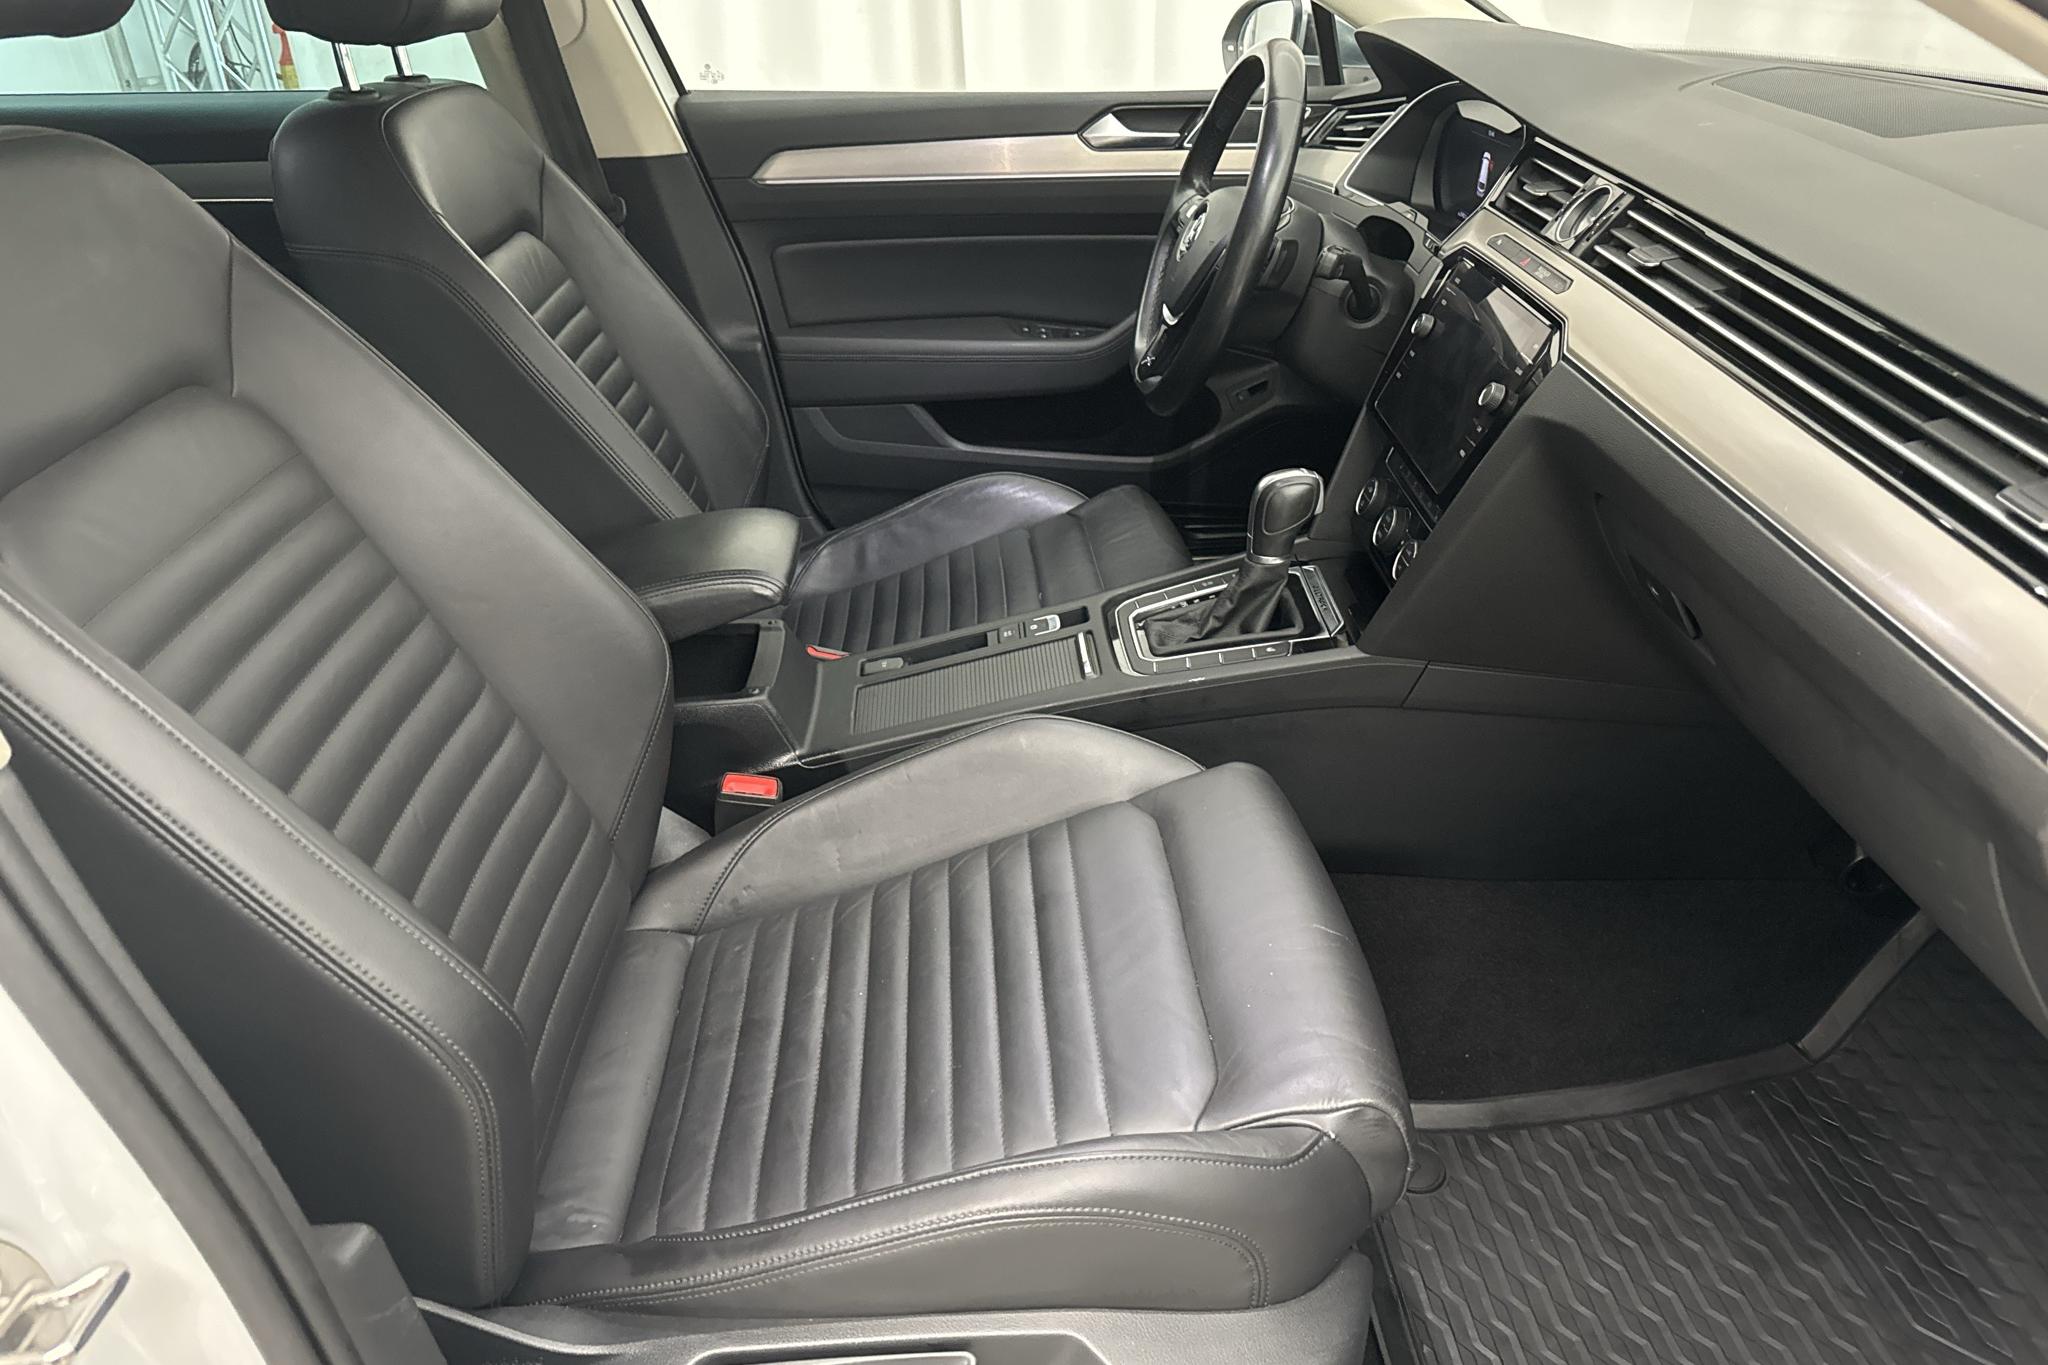 VW Passat Alltrack 2.0 TDI 4MOTION (190hk) - 198 760 km - Automatyczna - biały - 2019